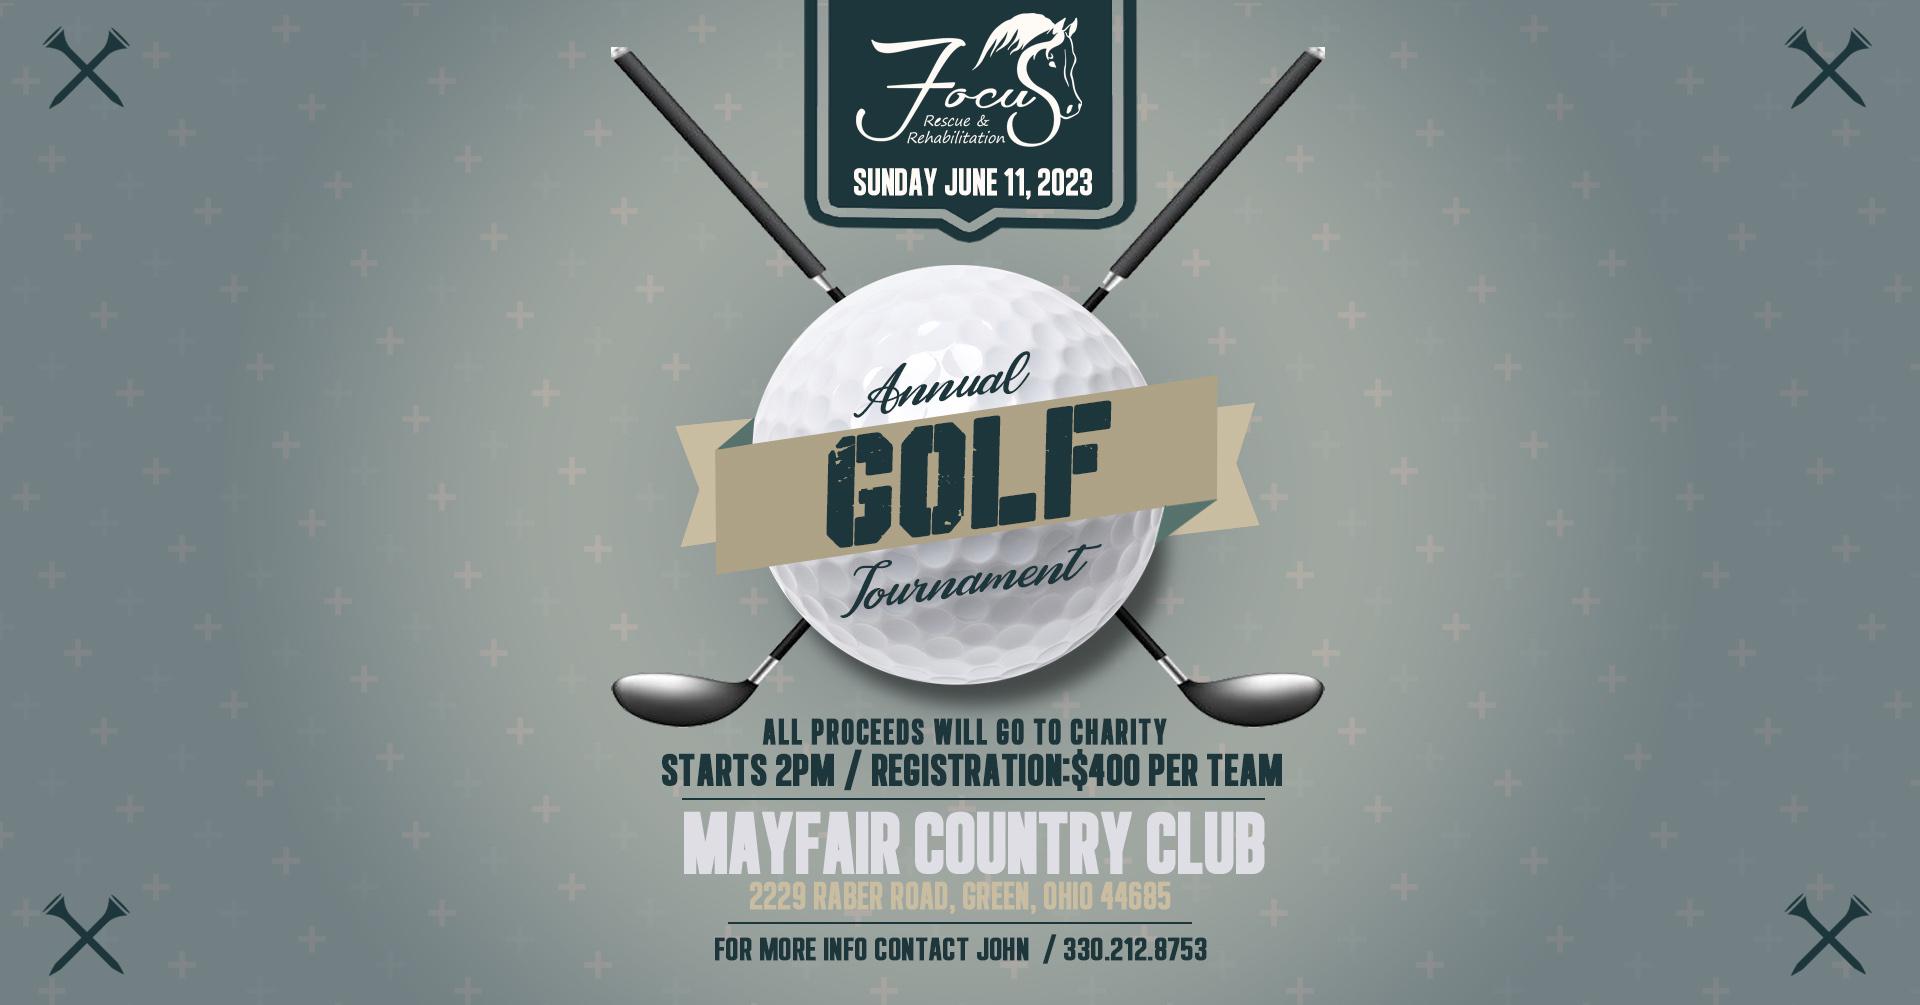 Focus Rescue's Golf Tournament Fundraiser